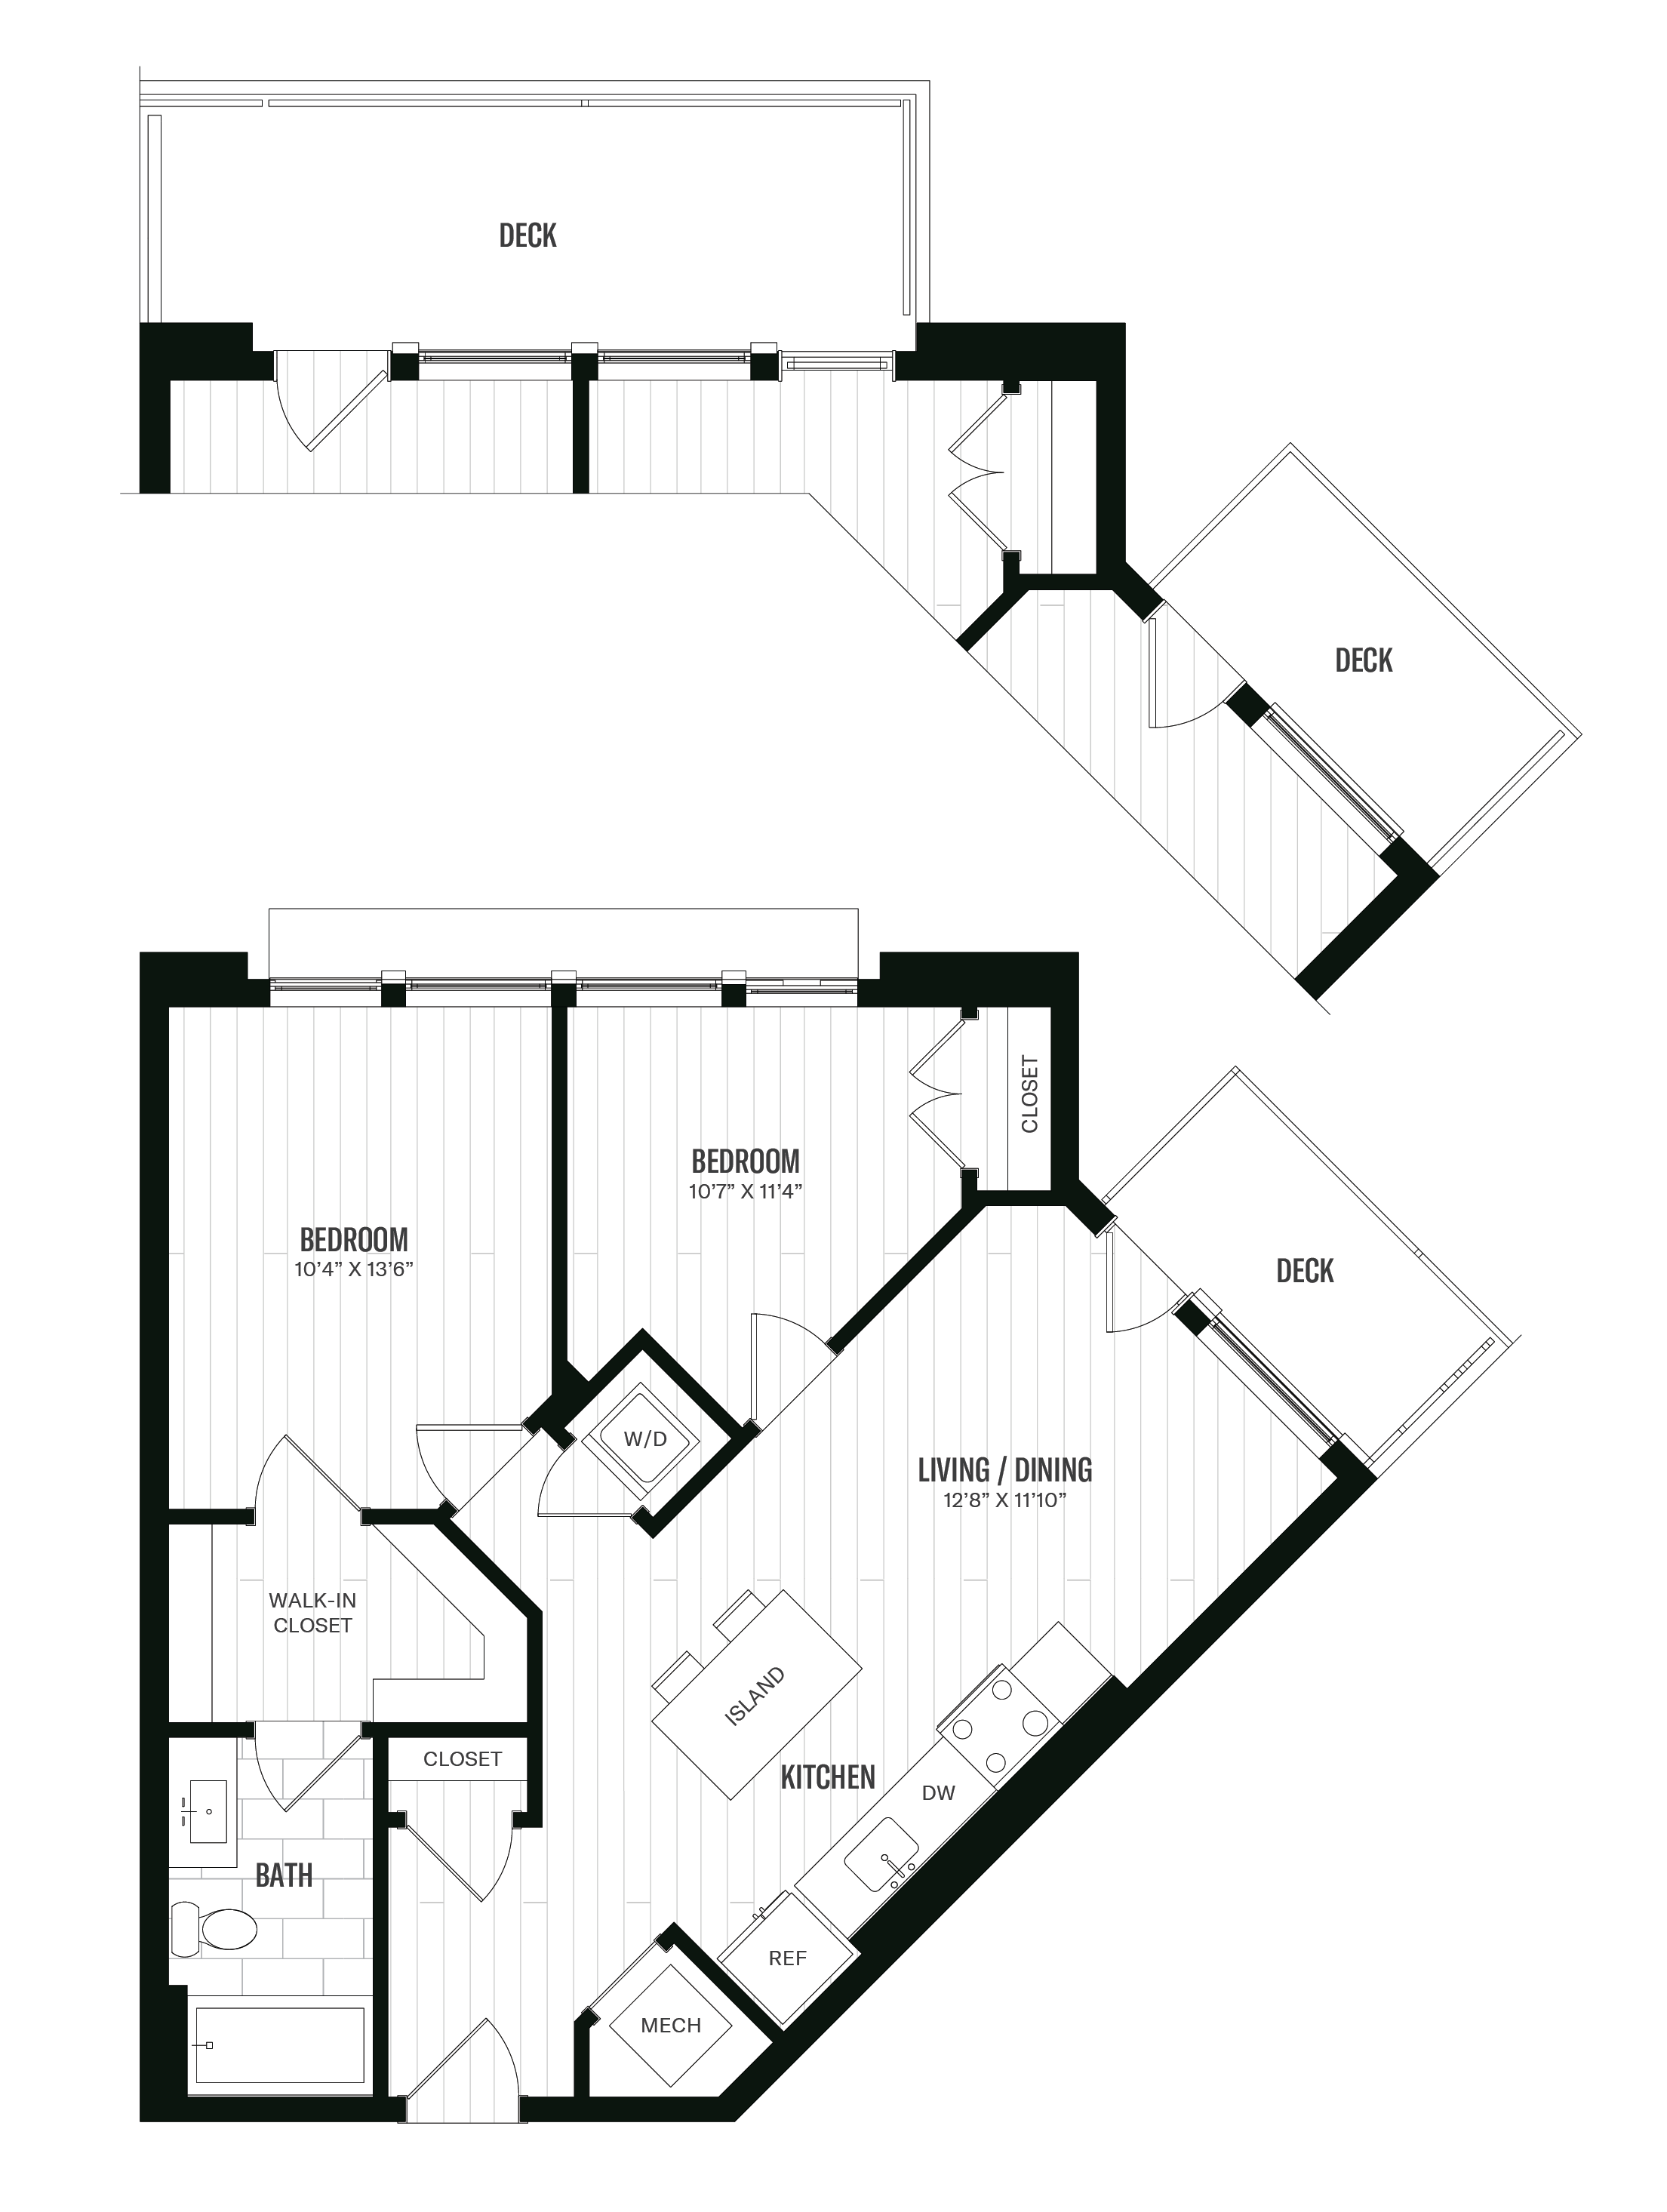 Floorplan image of unit 314